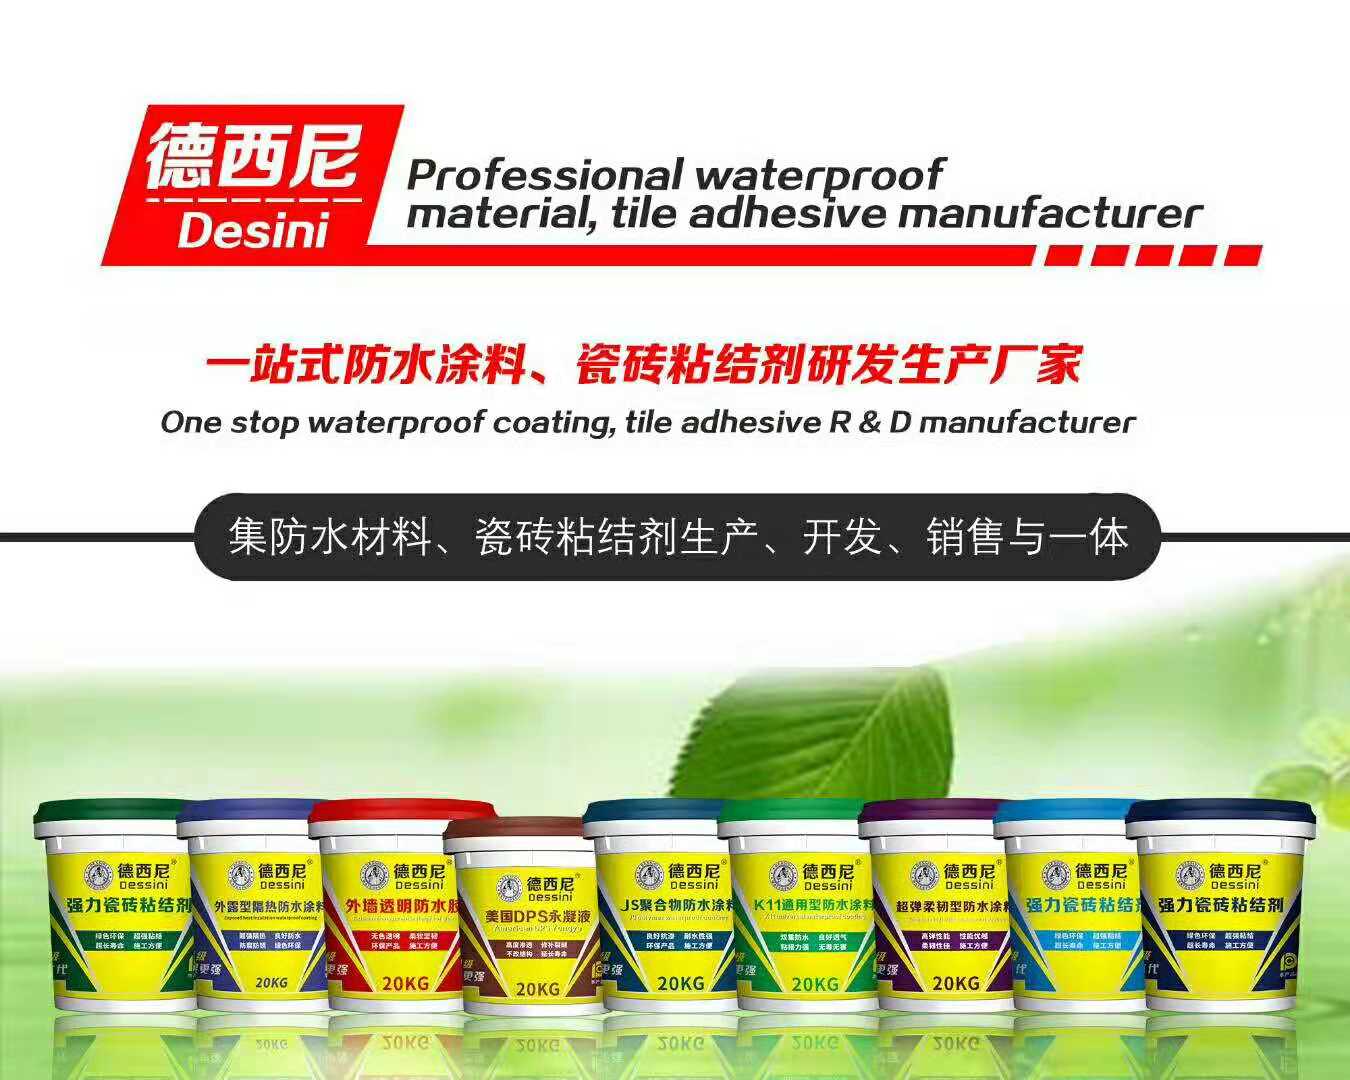 廣州德西尼瓷磚粘結劑有限公司